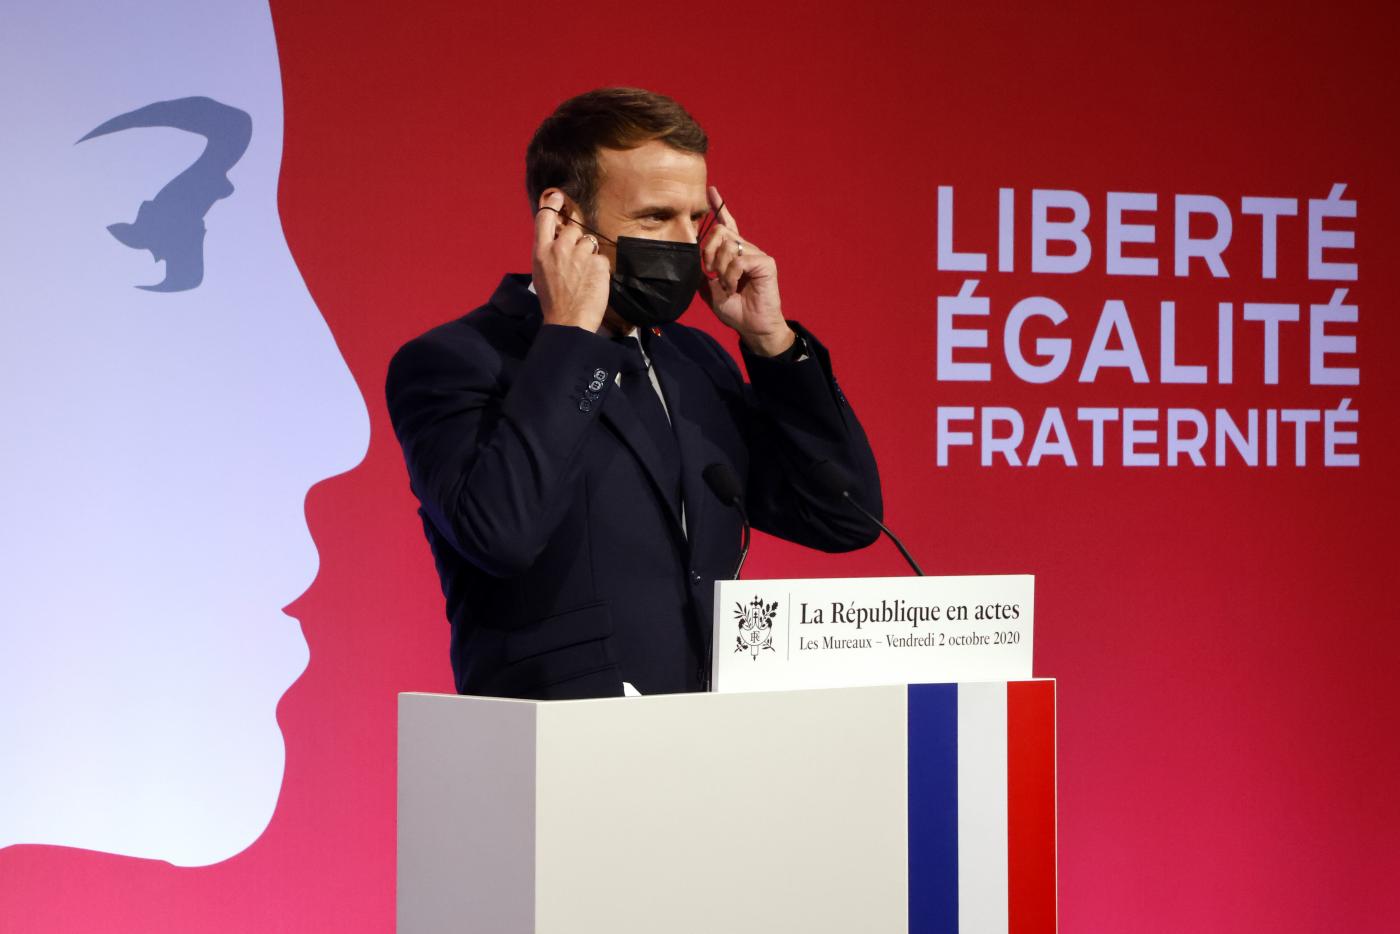 Macron anuncia disolución de grupo islamista 